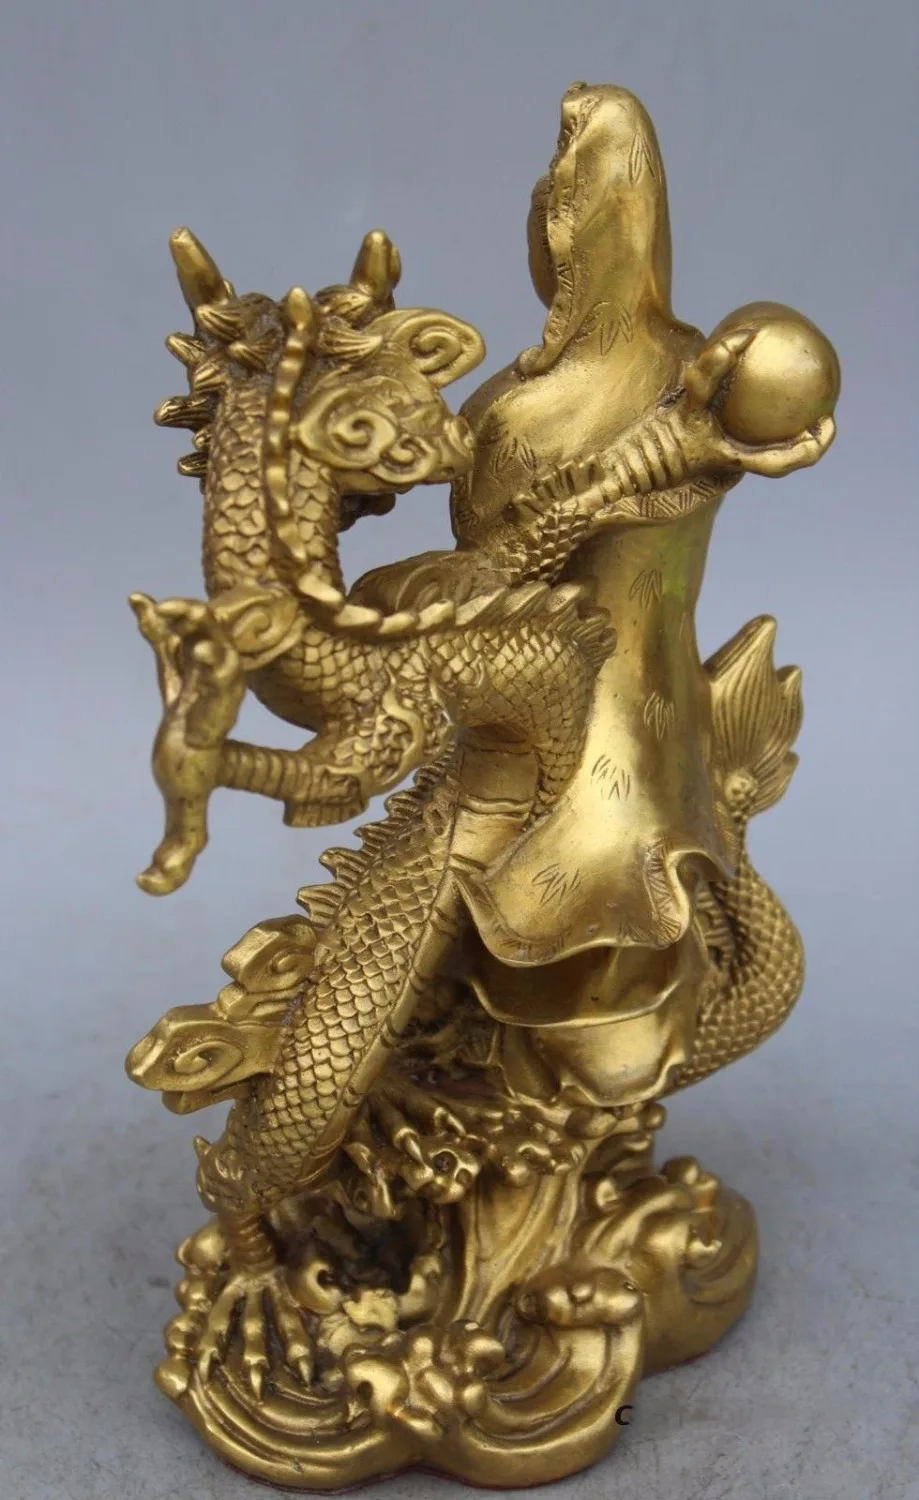 China Brass Dragon kwan-yin GuanYin Goddess buddha statue 